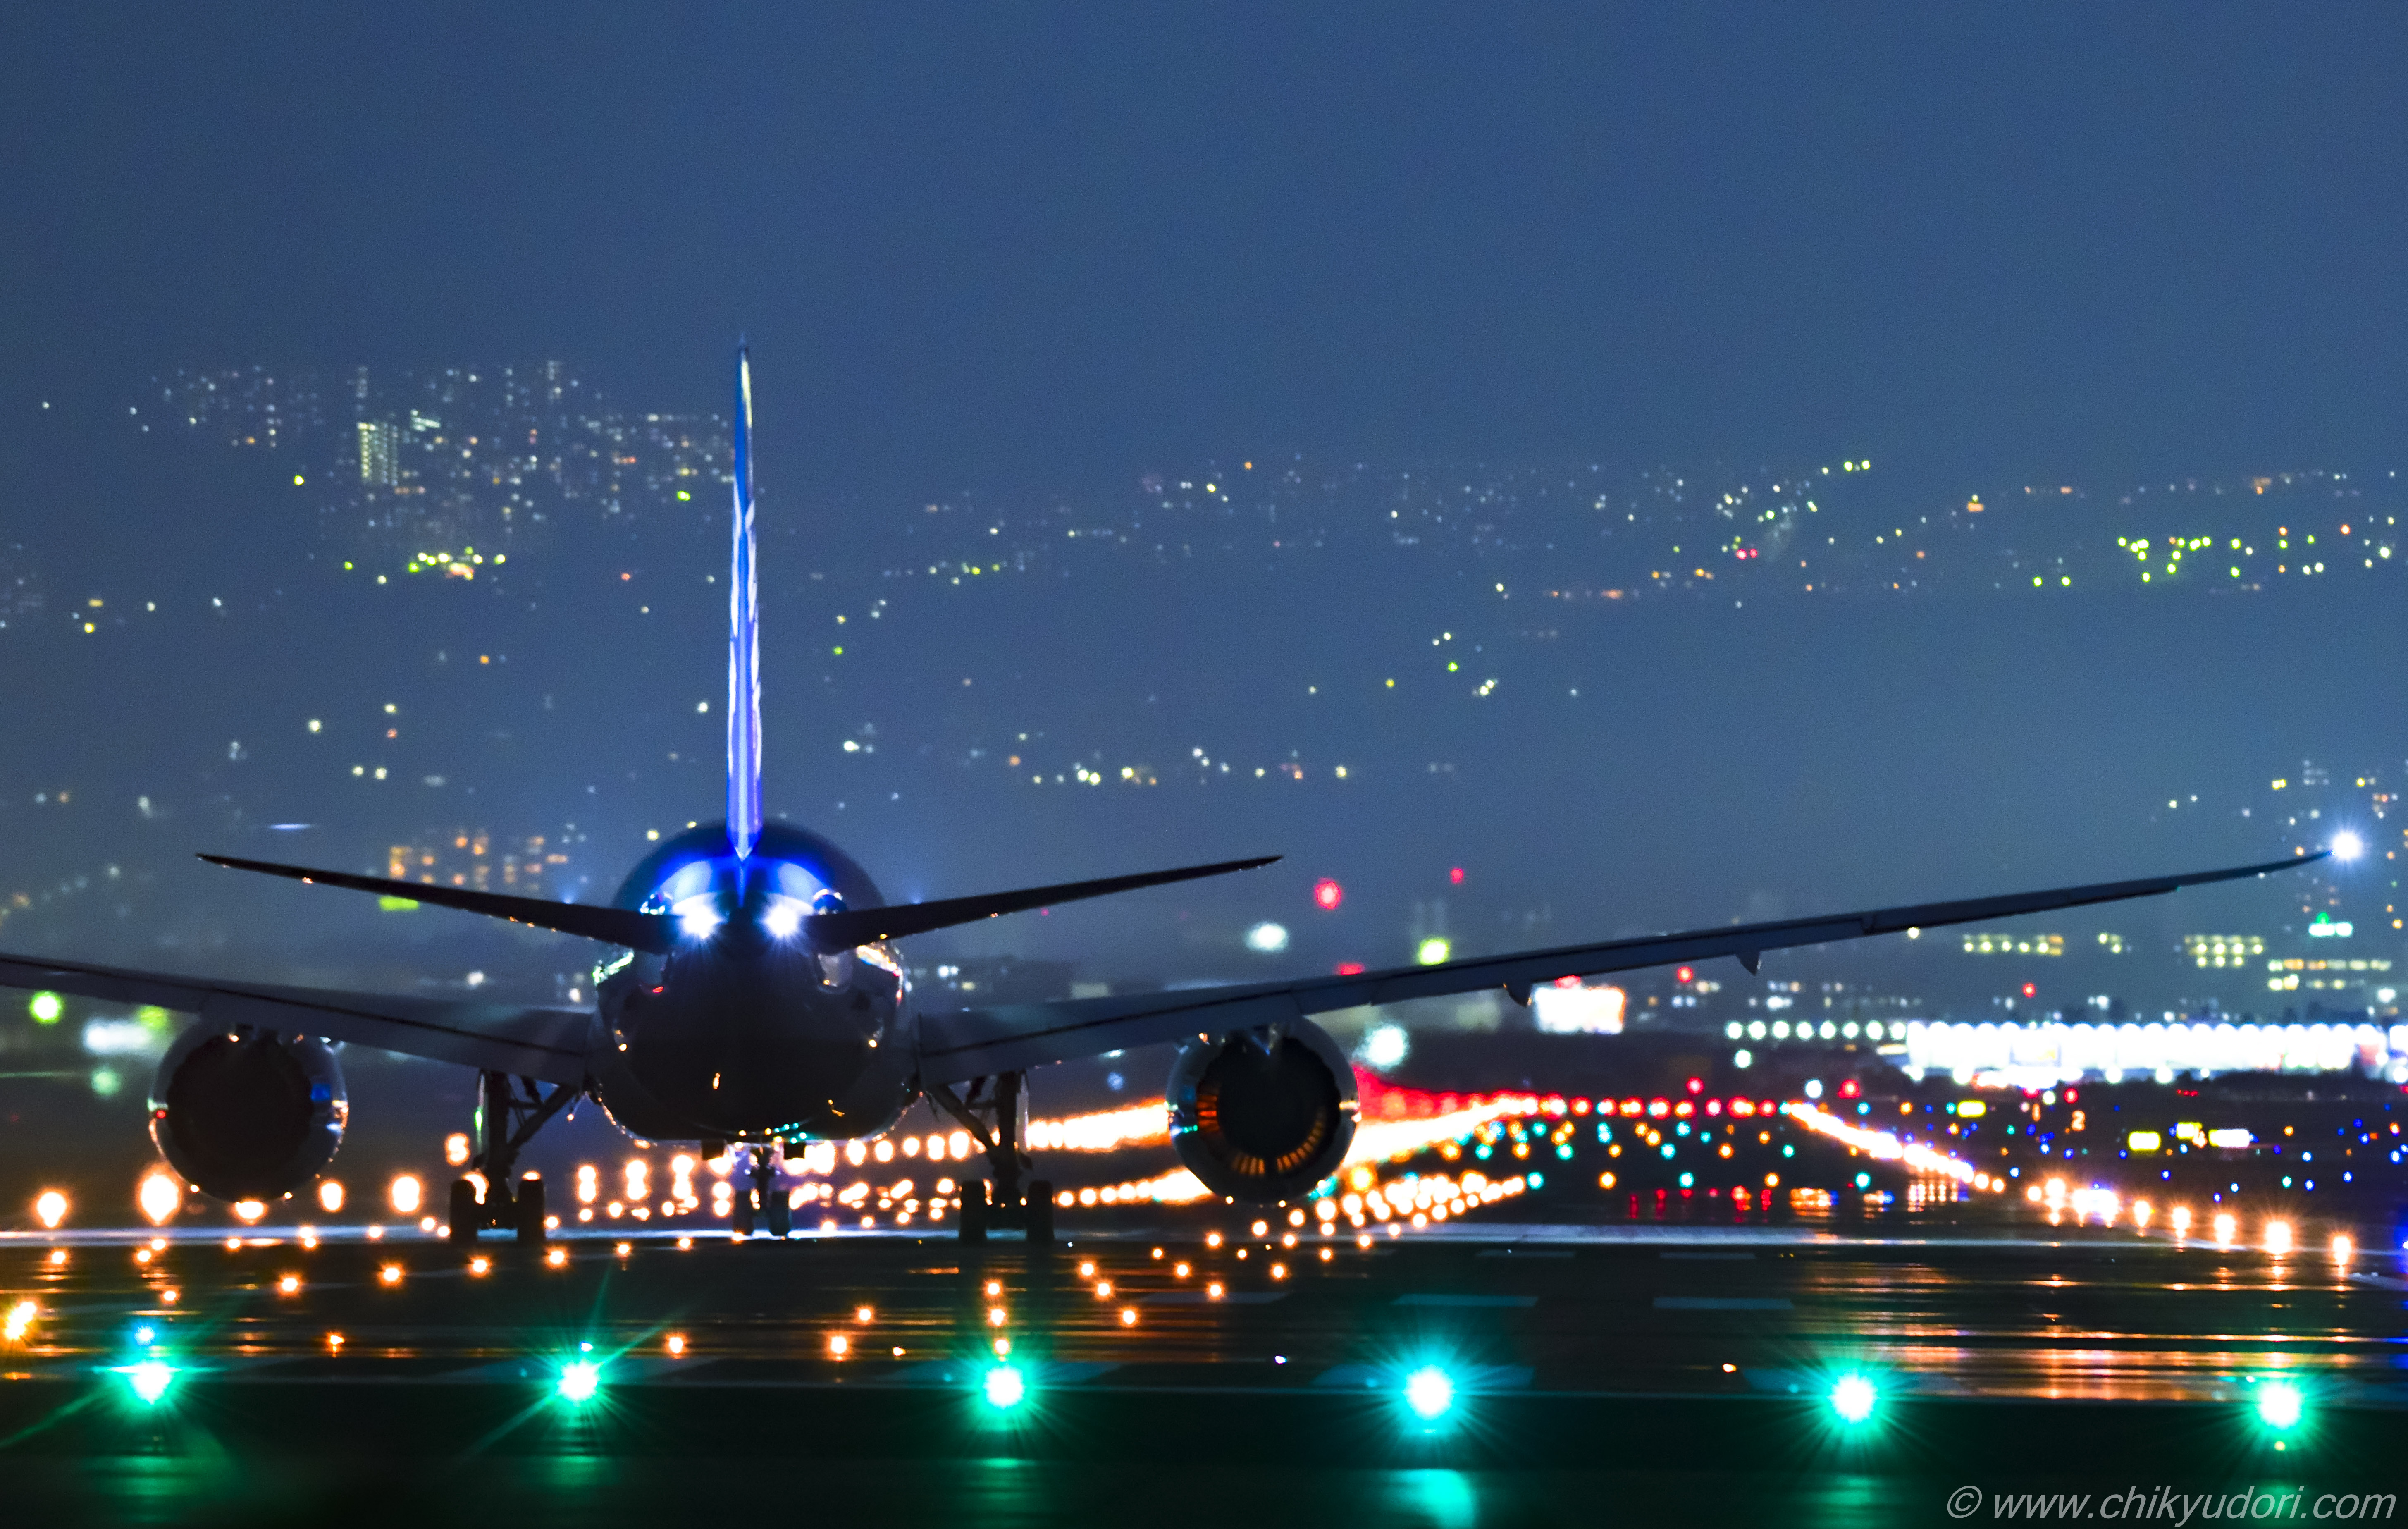 伊丹空港 大阪国際空港 の千里川の土手と夜景撮影 地球の撮り方